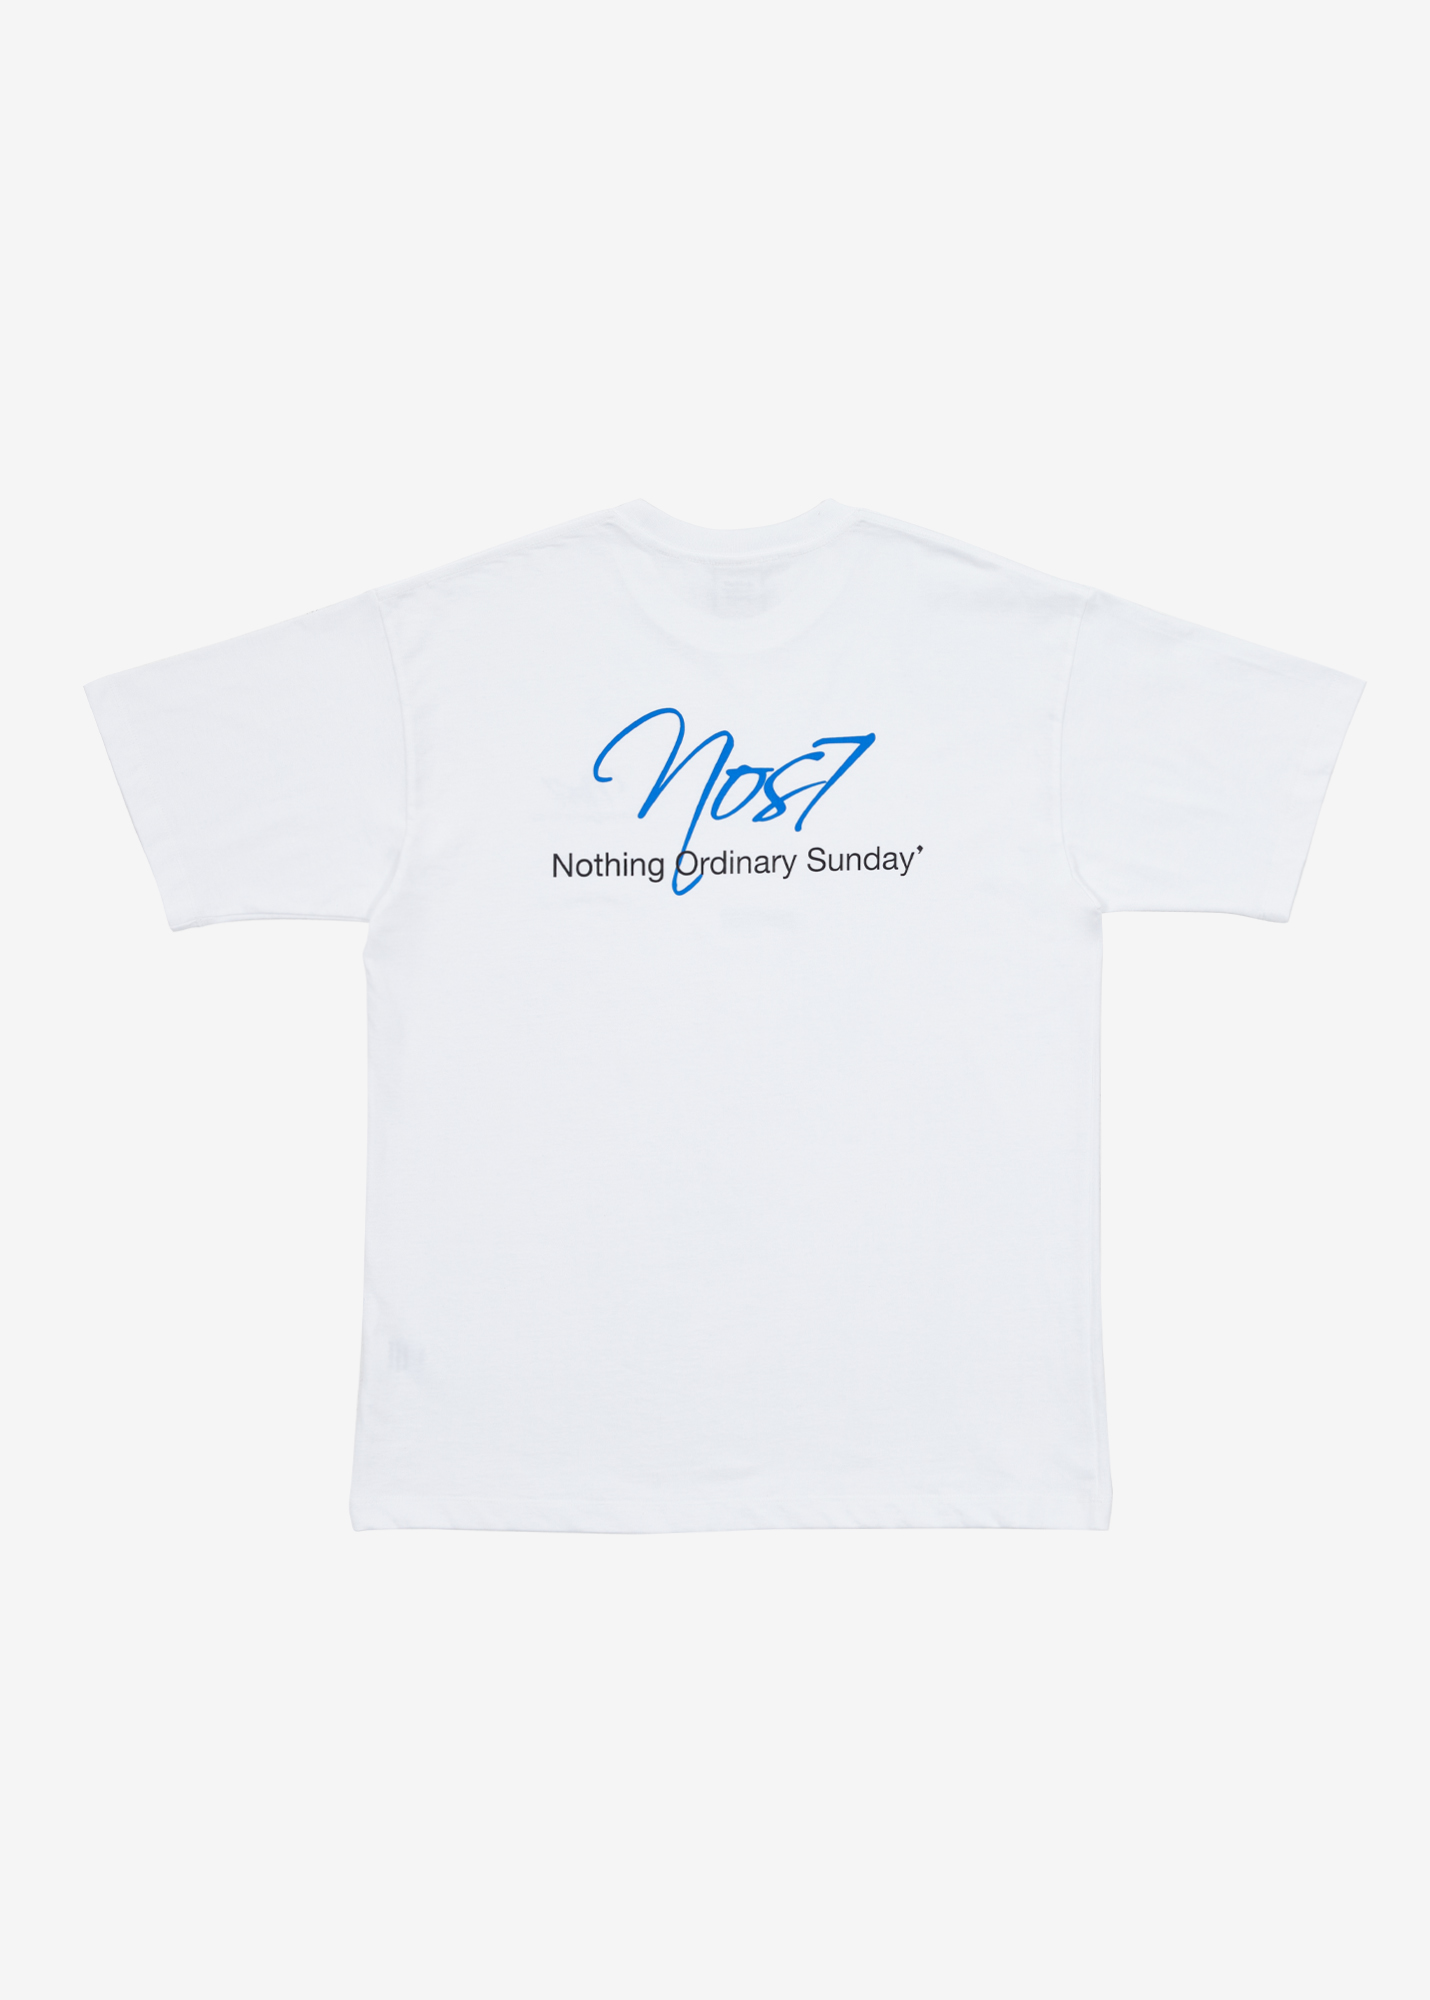 NOS7 Handwriting T-shirt - White